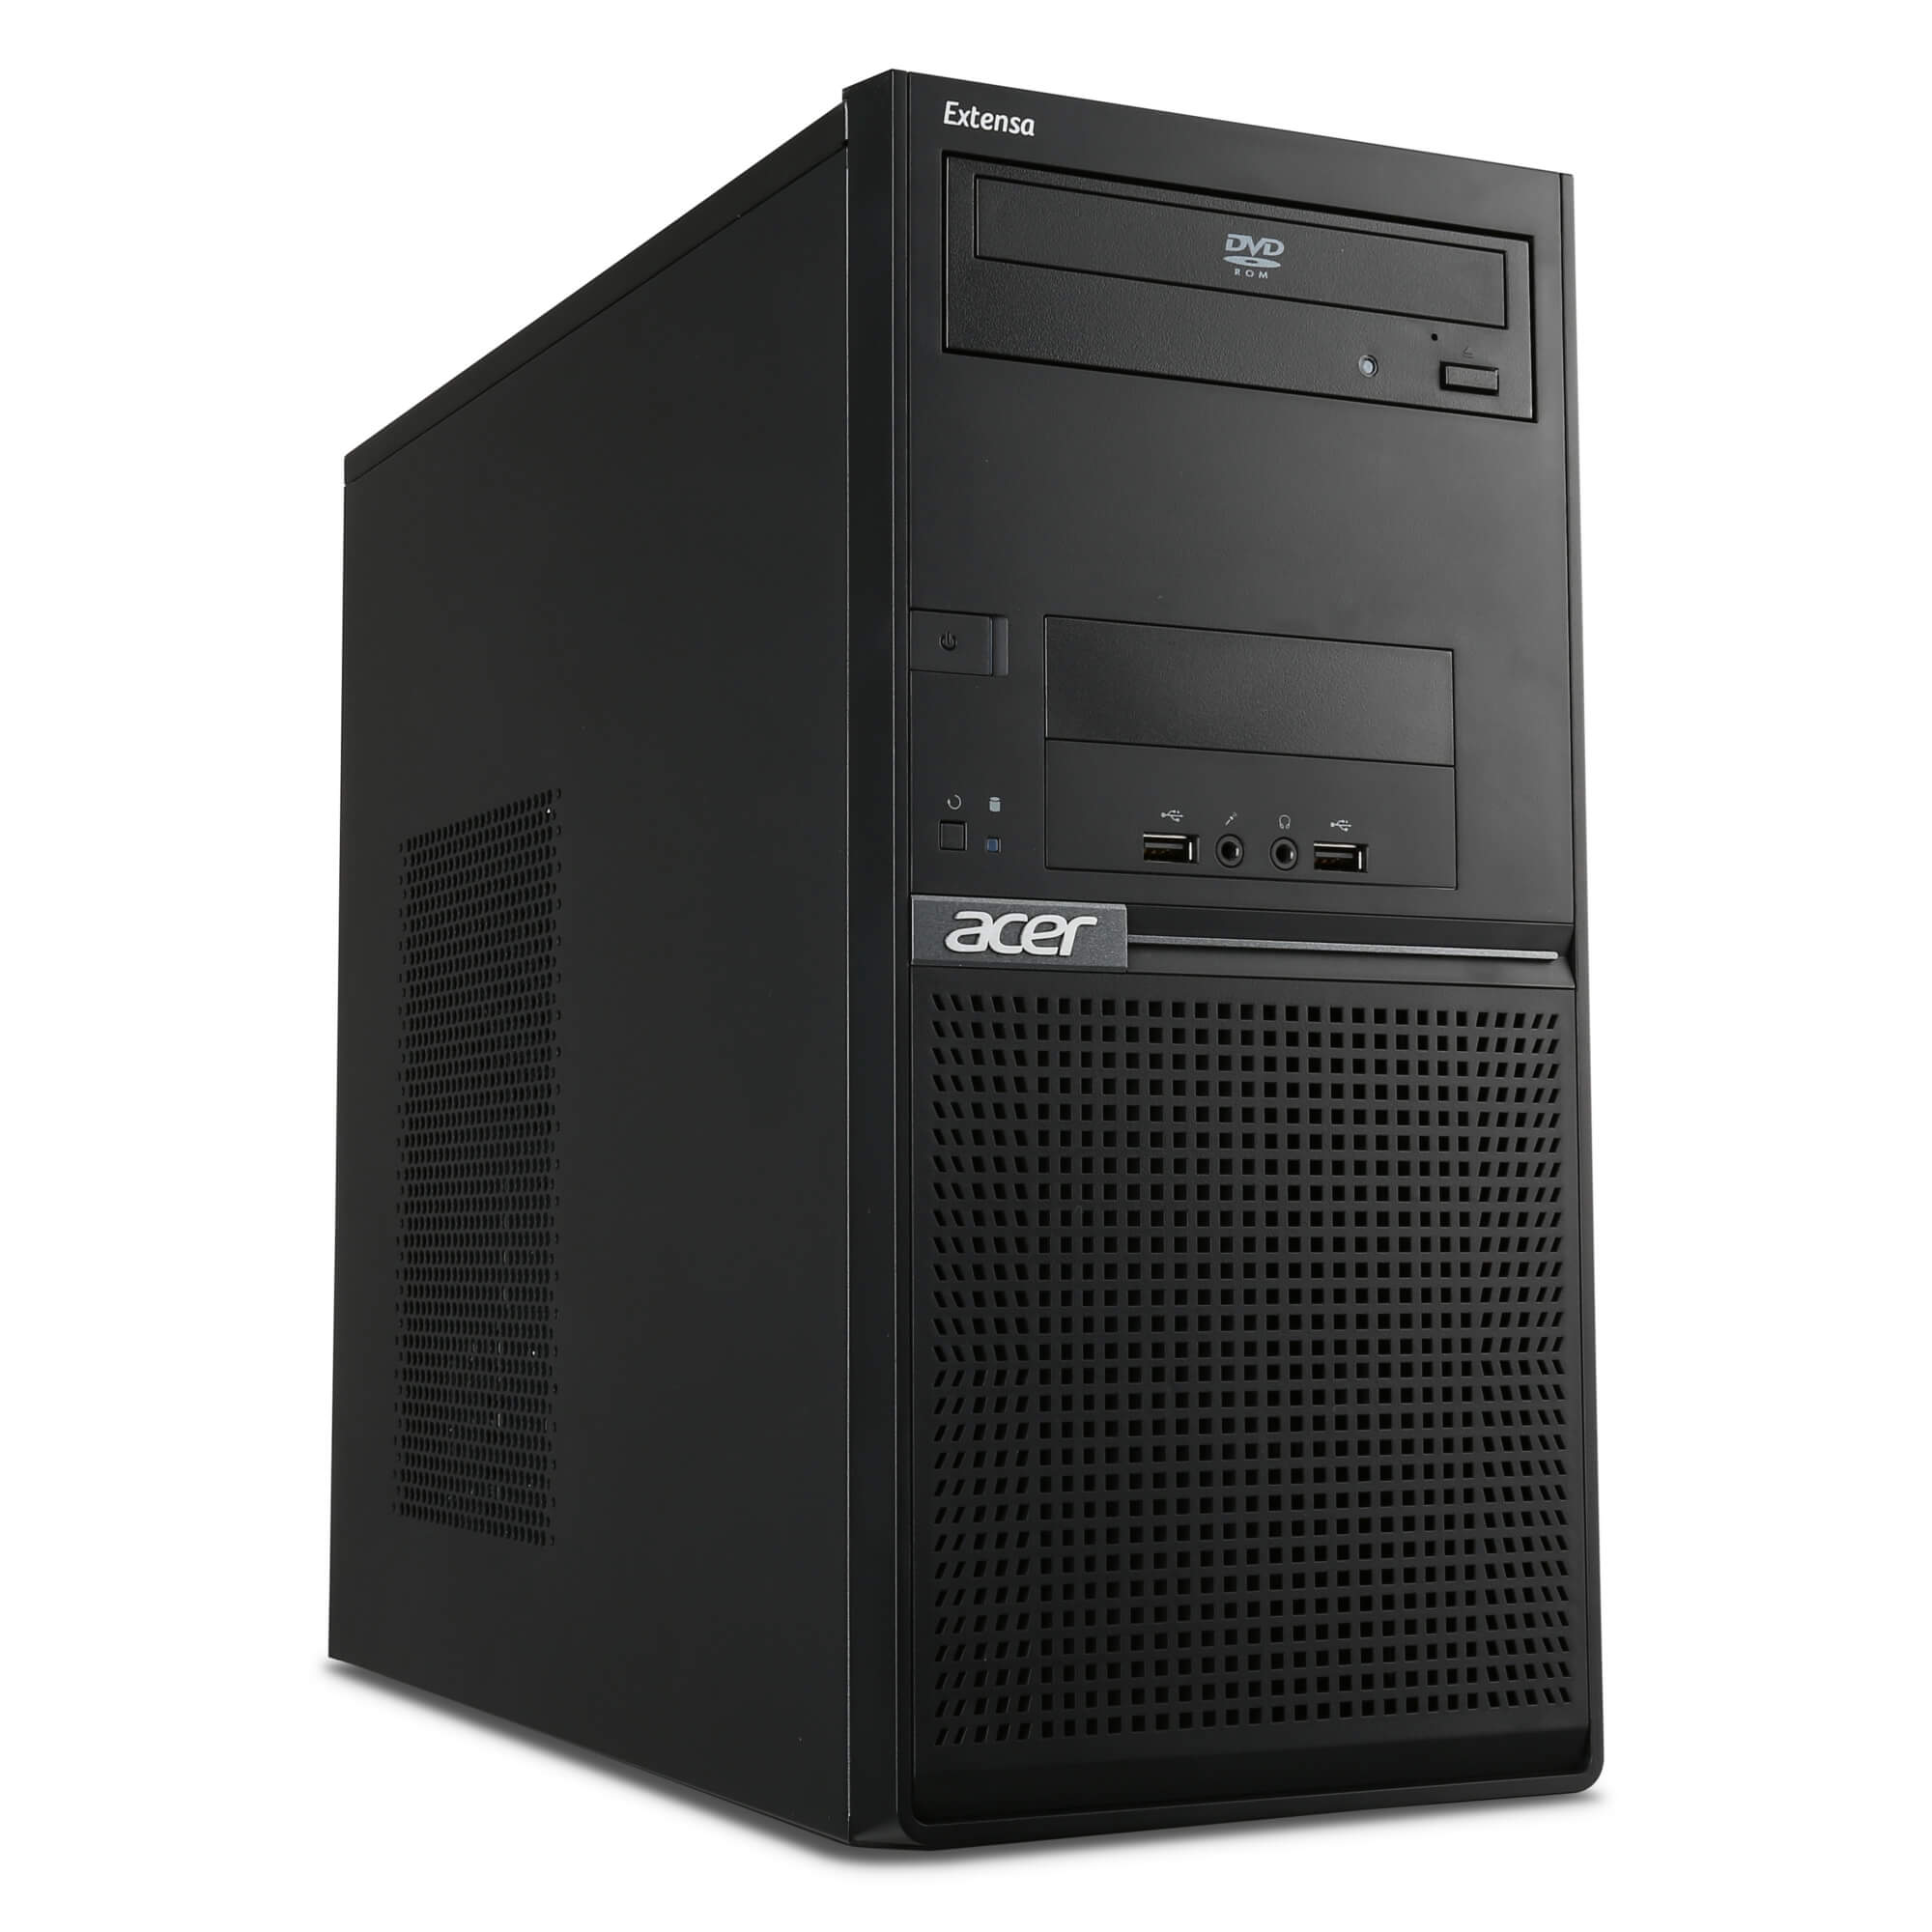  Sistem Desktop PC Acer EM2610 Intel Core i3-4170, 4GB DDR3, HDD 1TB, AMD R5-310 2GB, FreeDOS 